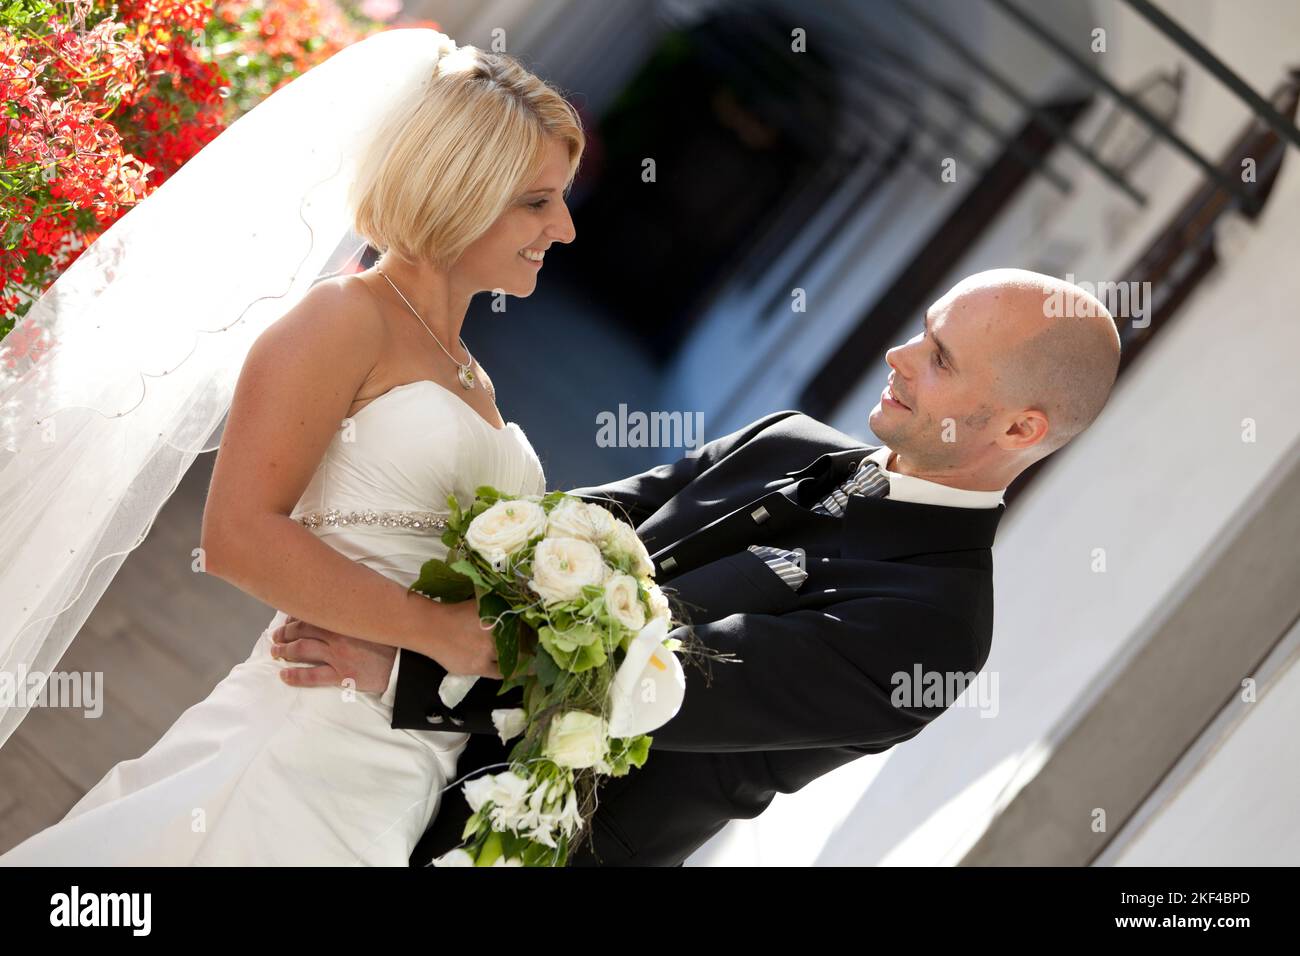 Ein glückliches Breutpaar mit Breutstrauss freut sich über die Hochzeit, Blond, Blondine, 30, 35, Járe, Anzugträger, Banque D'Images